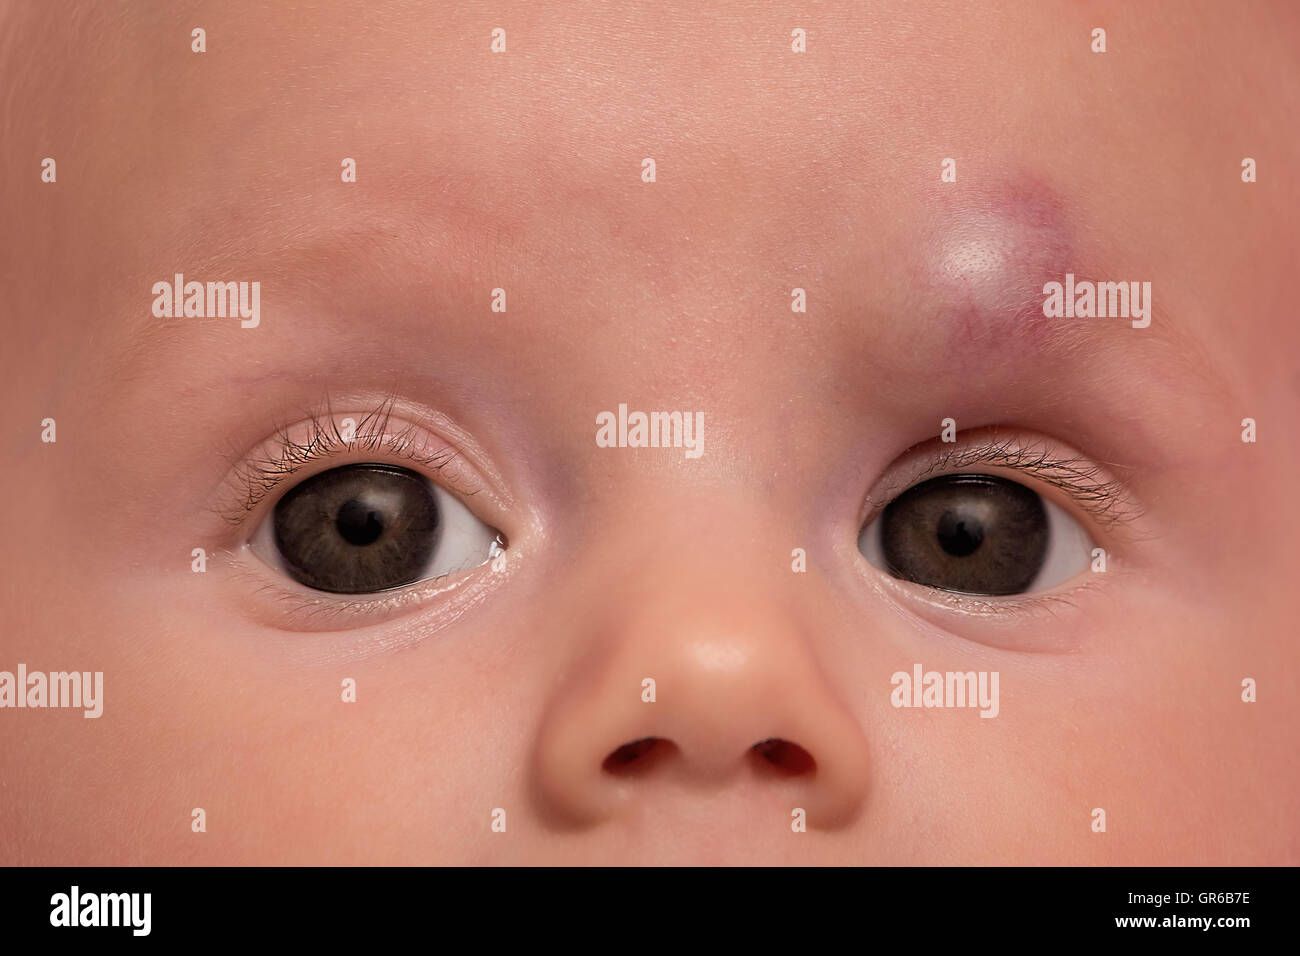 Hémangiome infantile sur le front de petite fille, le traitement par propranol. Banque D'Images